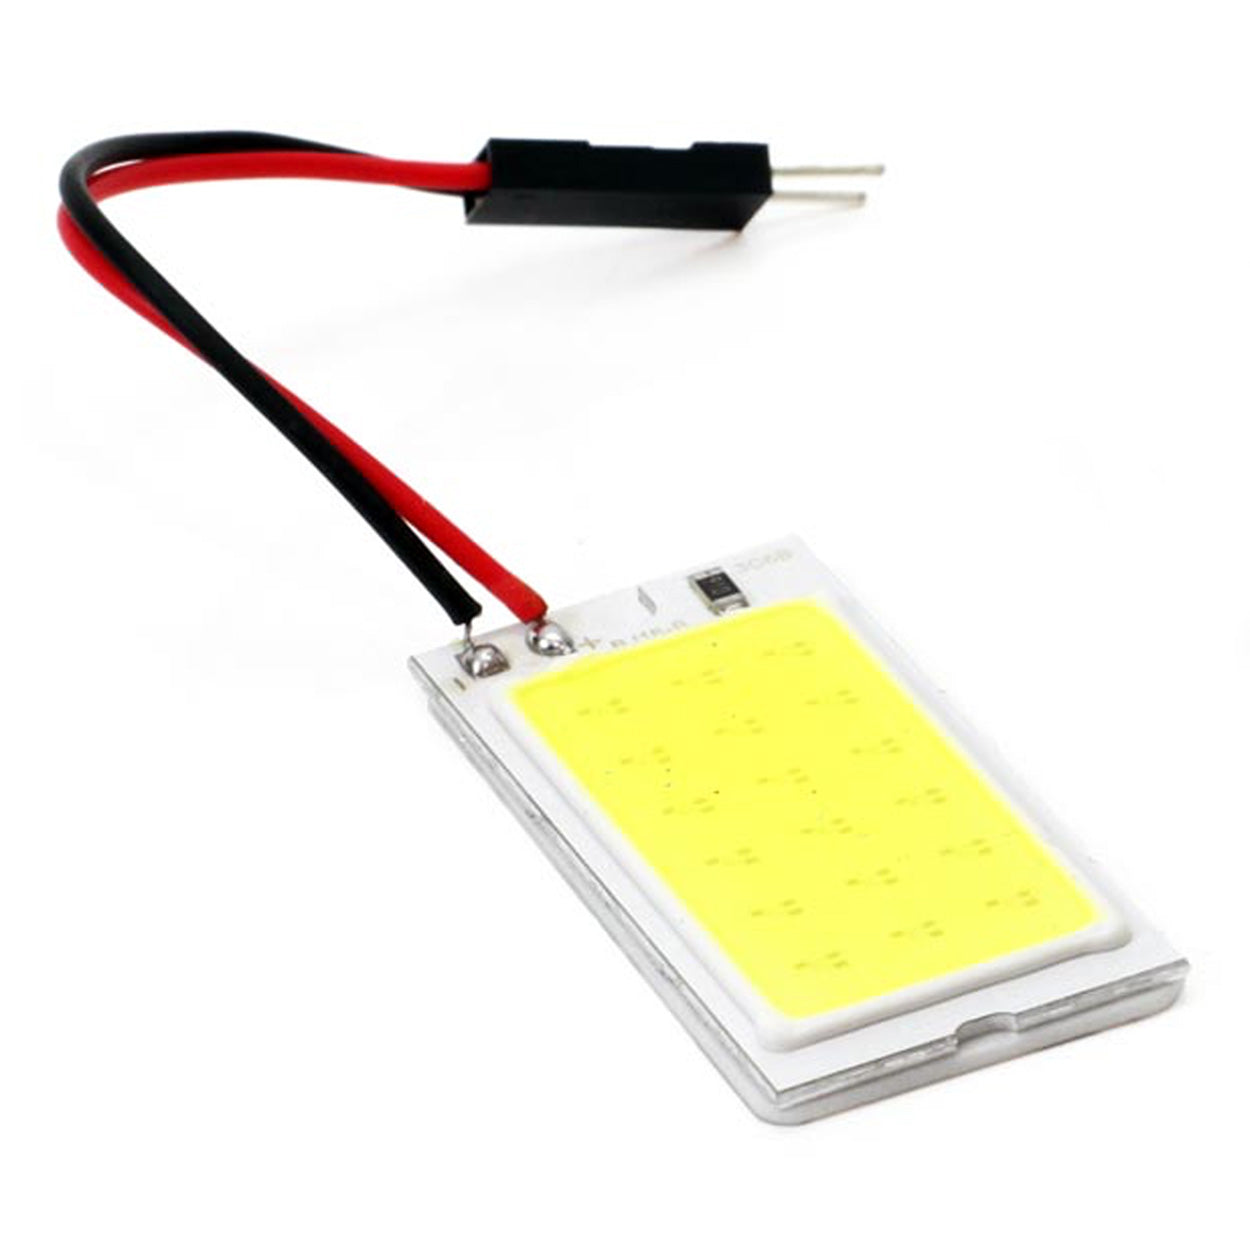 LED-lyspanel med T10 og Festoon-adaptere - spo-cs-disabled - spo-default - spo-disabled - spo-notify-me-disabled